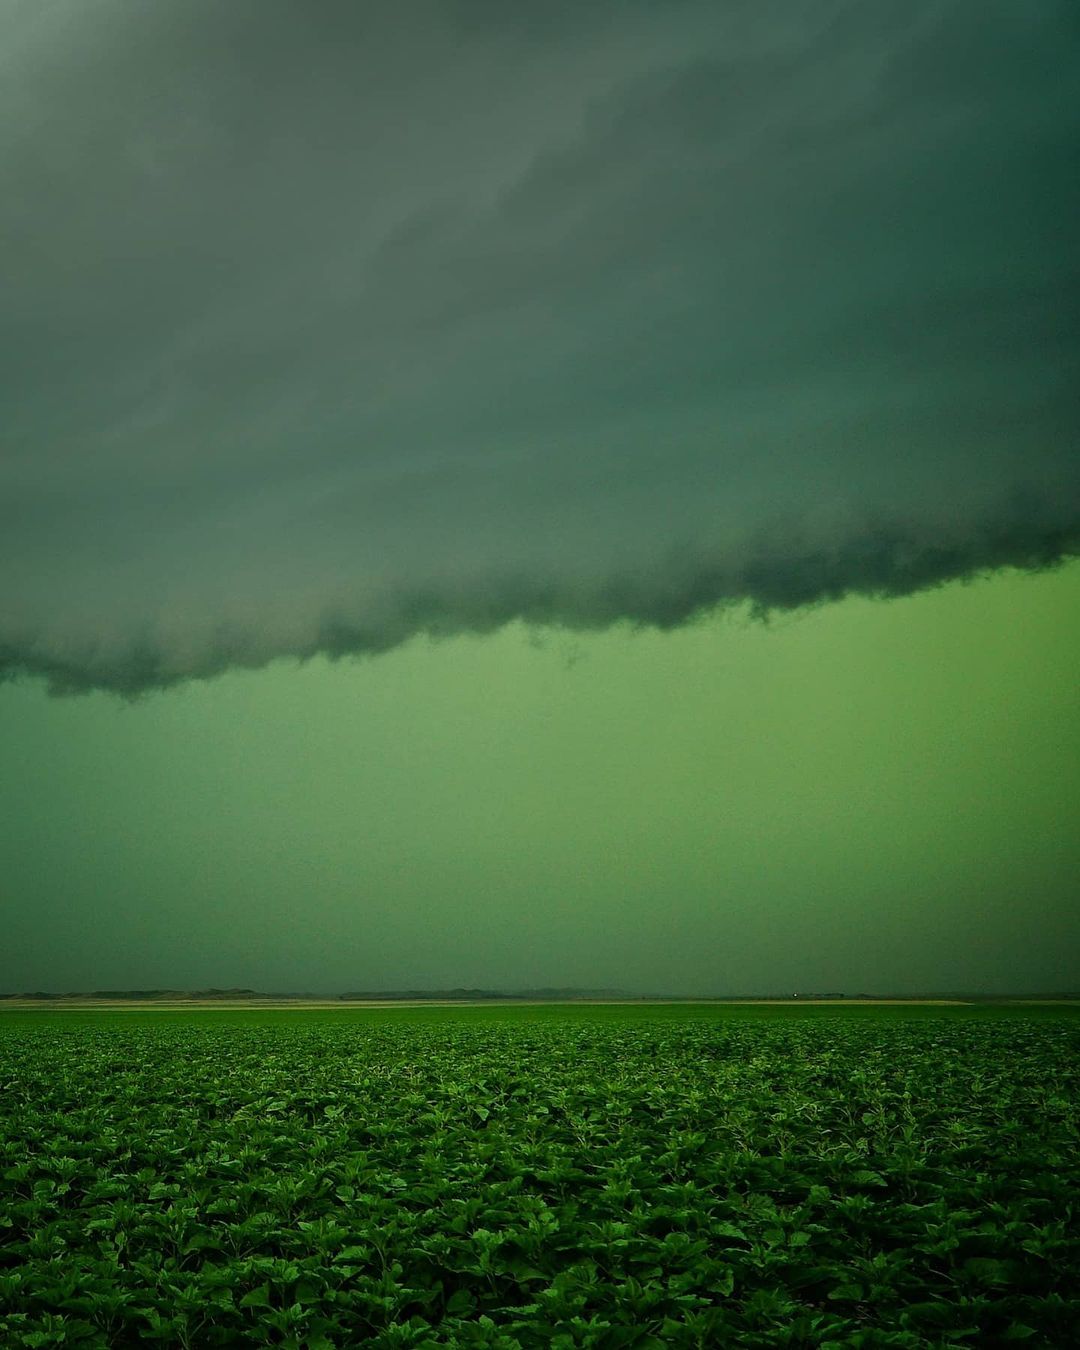 Яростные торнадо, грозы и штормы на снимках Грега Джонсона